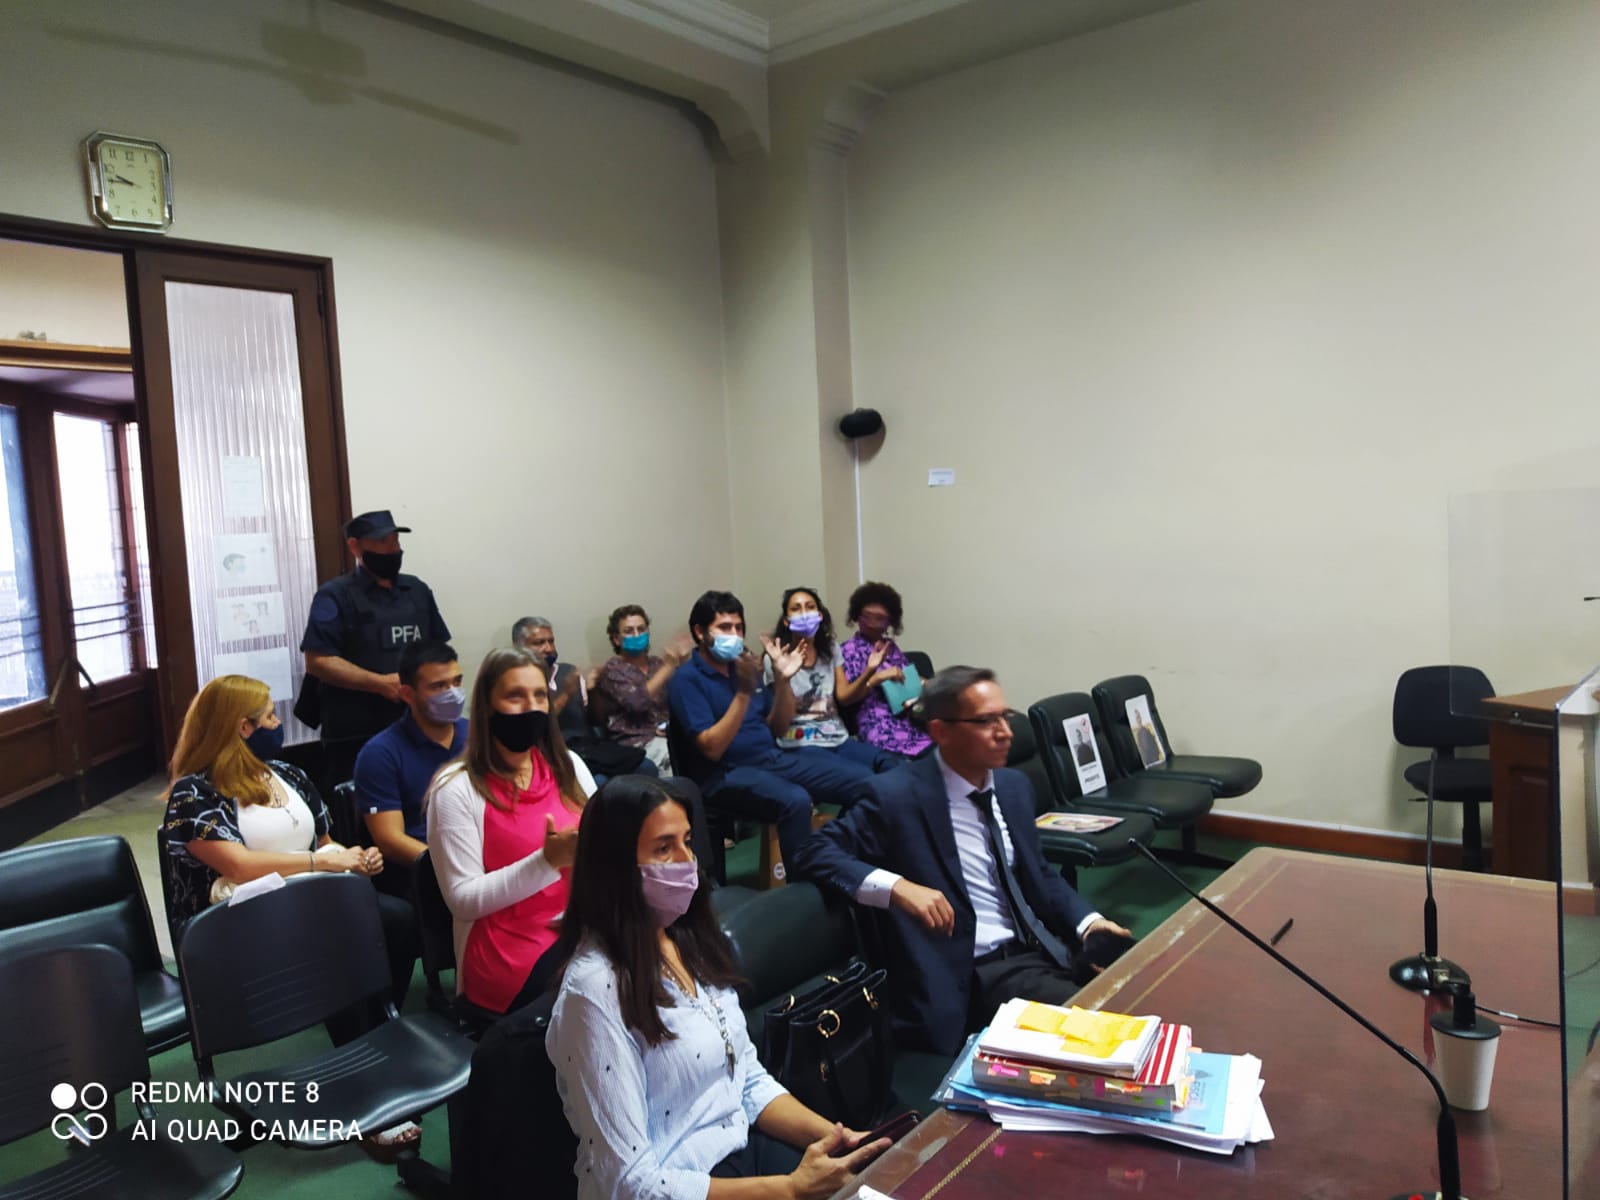 La lectura del veredicto fue seguida en la sala por familiares de la víctima, que aplaudieron la decisión del tribunal. - Foto: Sebastián Rodríguez / Ministerio Público Fiscal